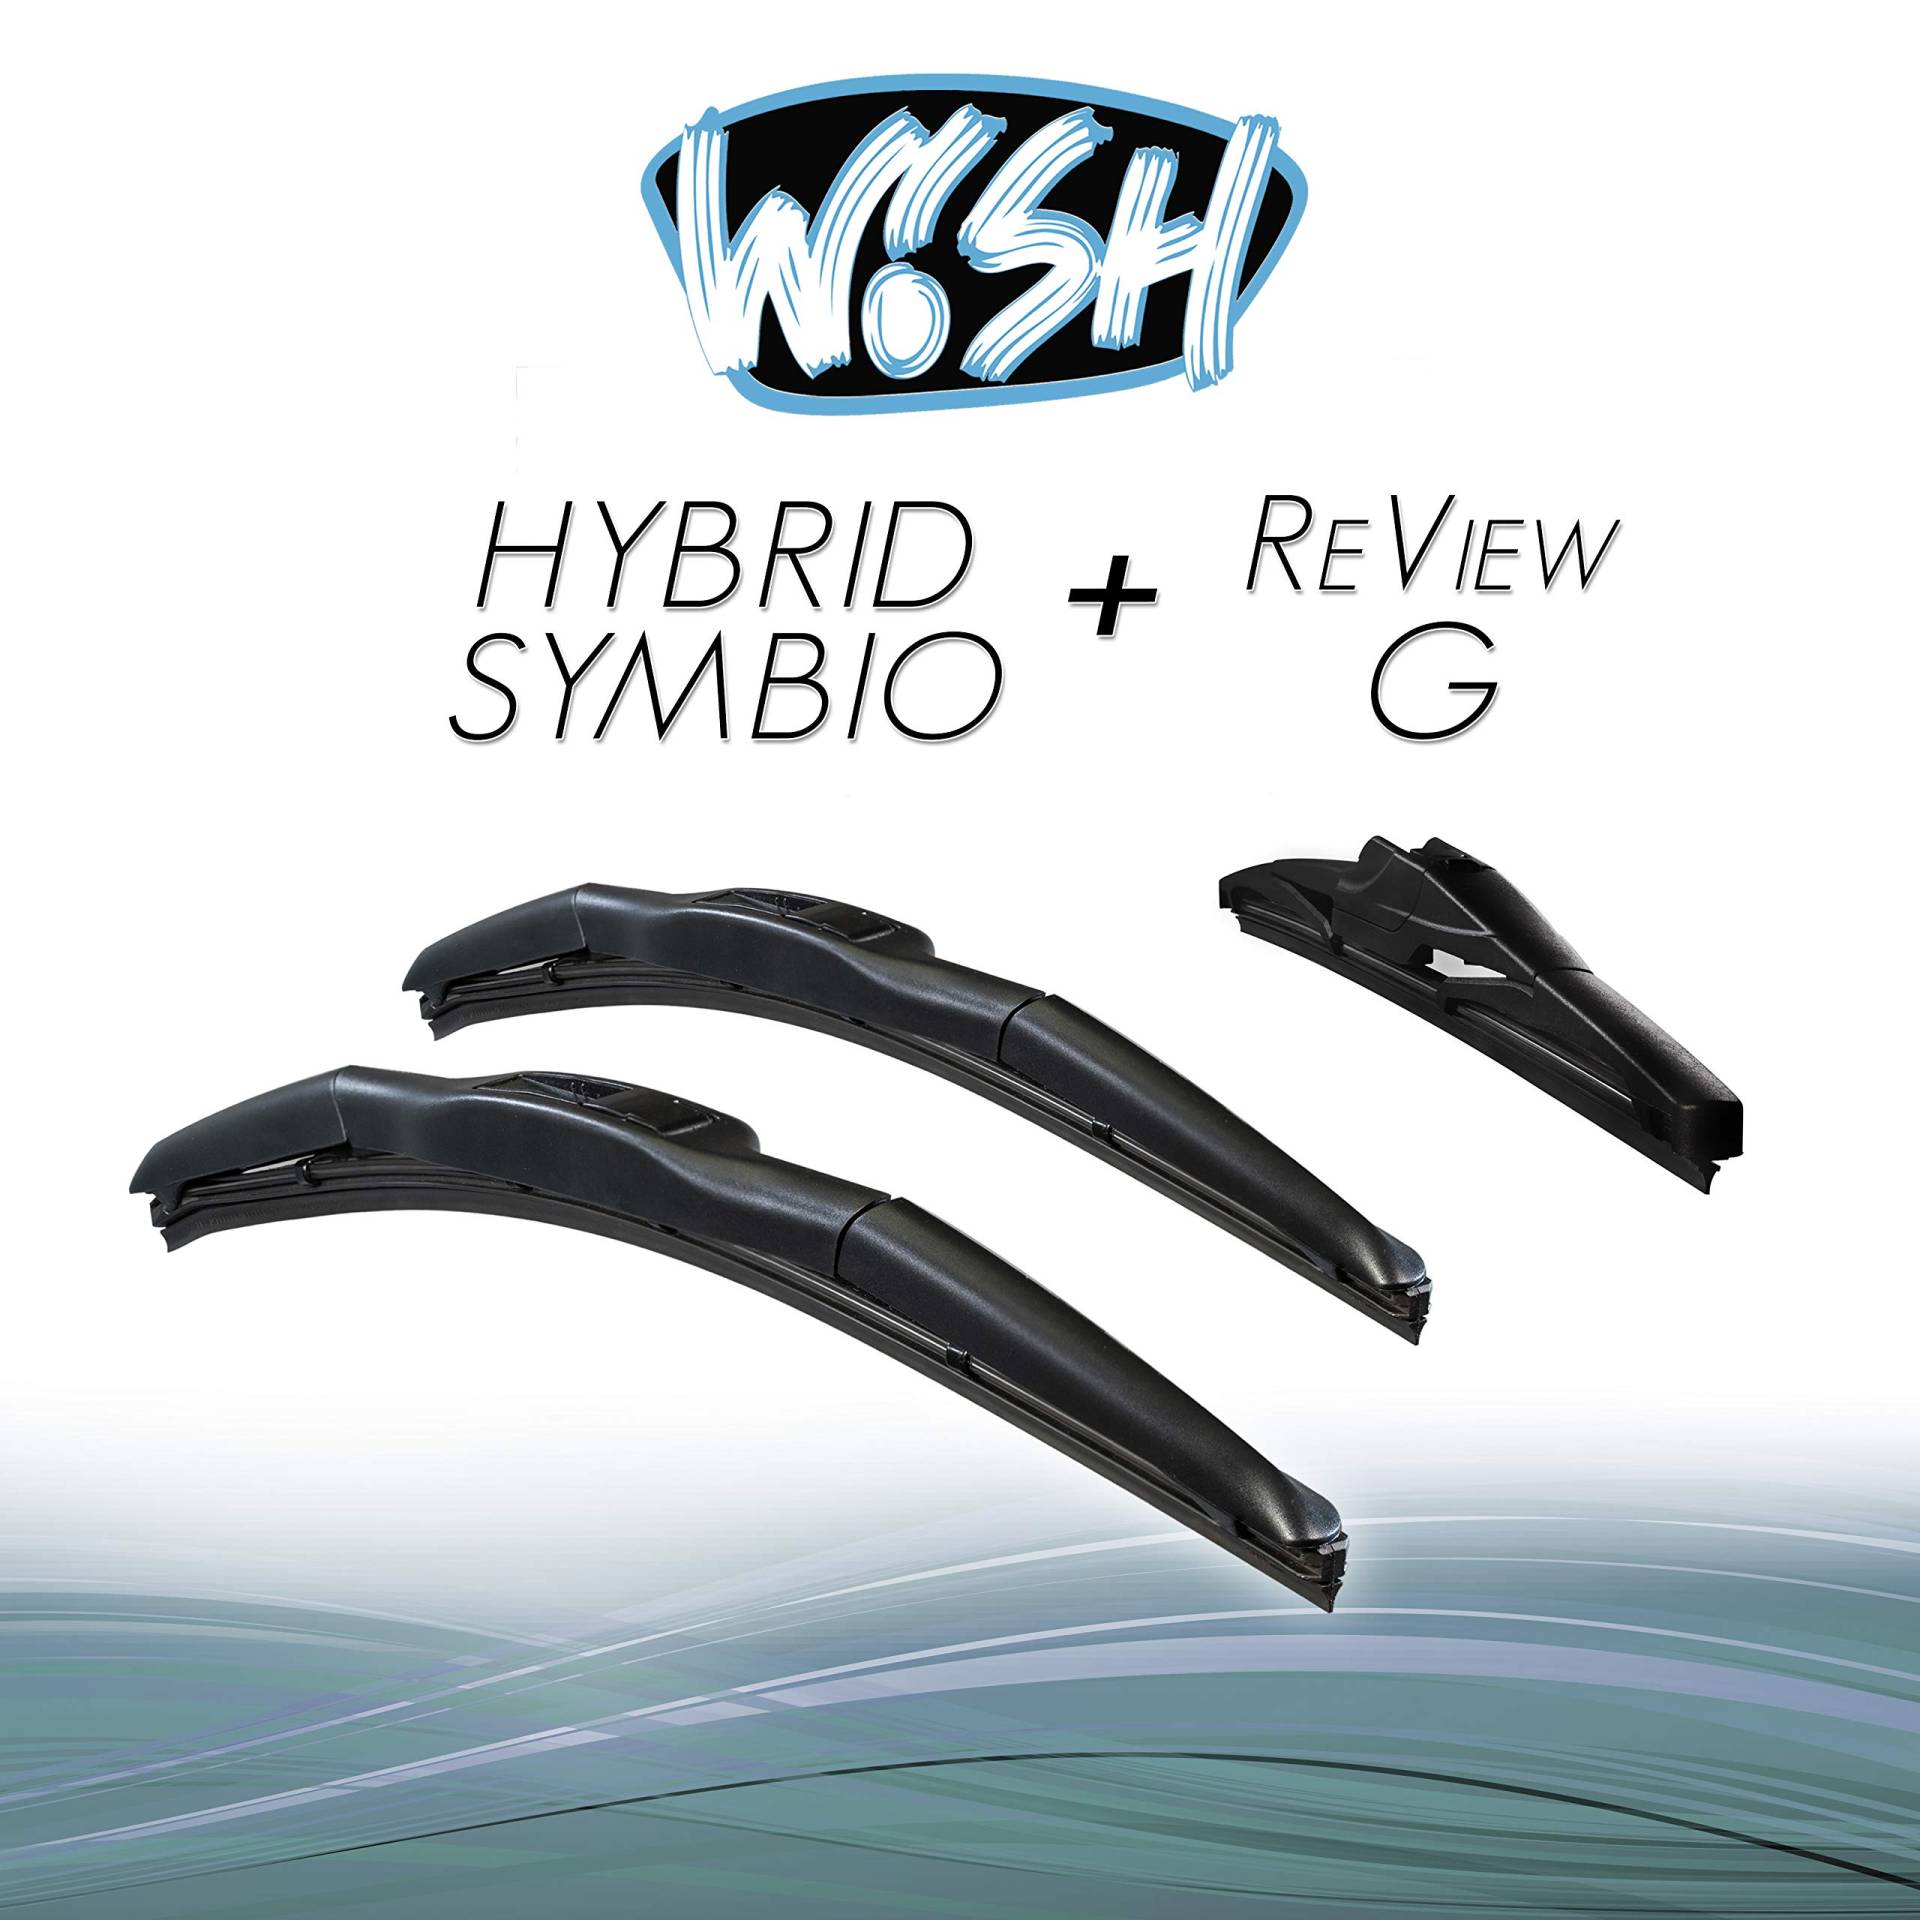 Wish® Hybrid Symbio Satz Front + Heck Scheibenwischer Länge: 22" 550mm / 19" 480mm / 14" 350mm Wischblätter Vorne und Hinten Hybrid-Scheibenwischer + Review G HS22.19.RG14 von Wish